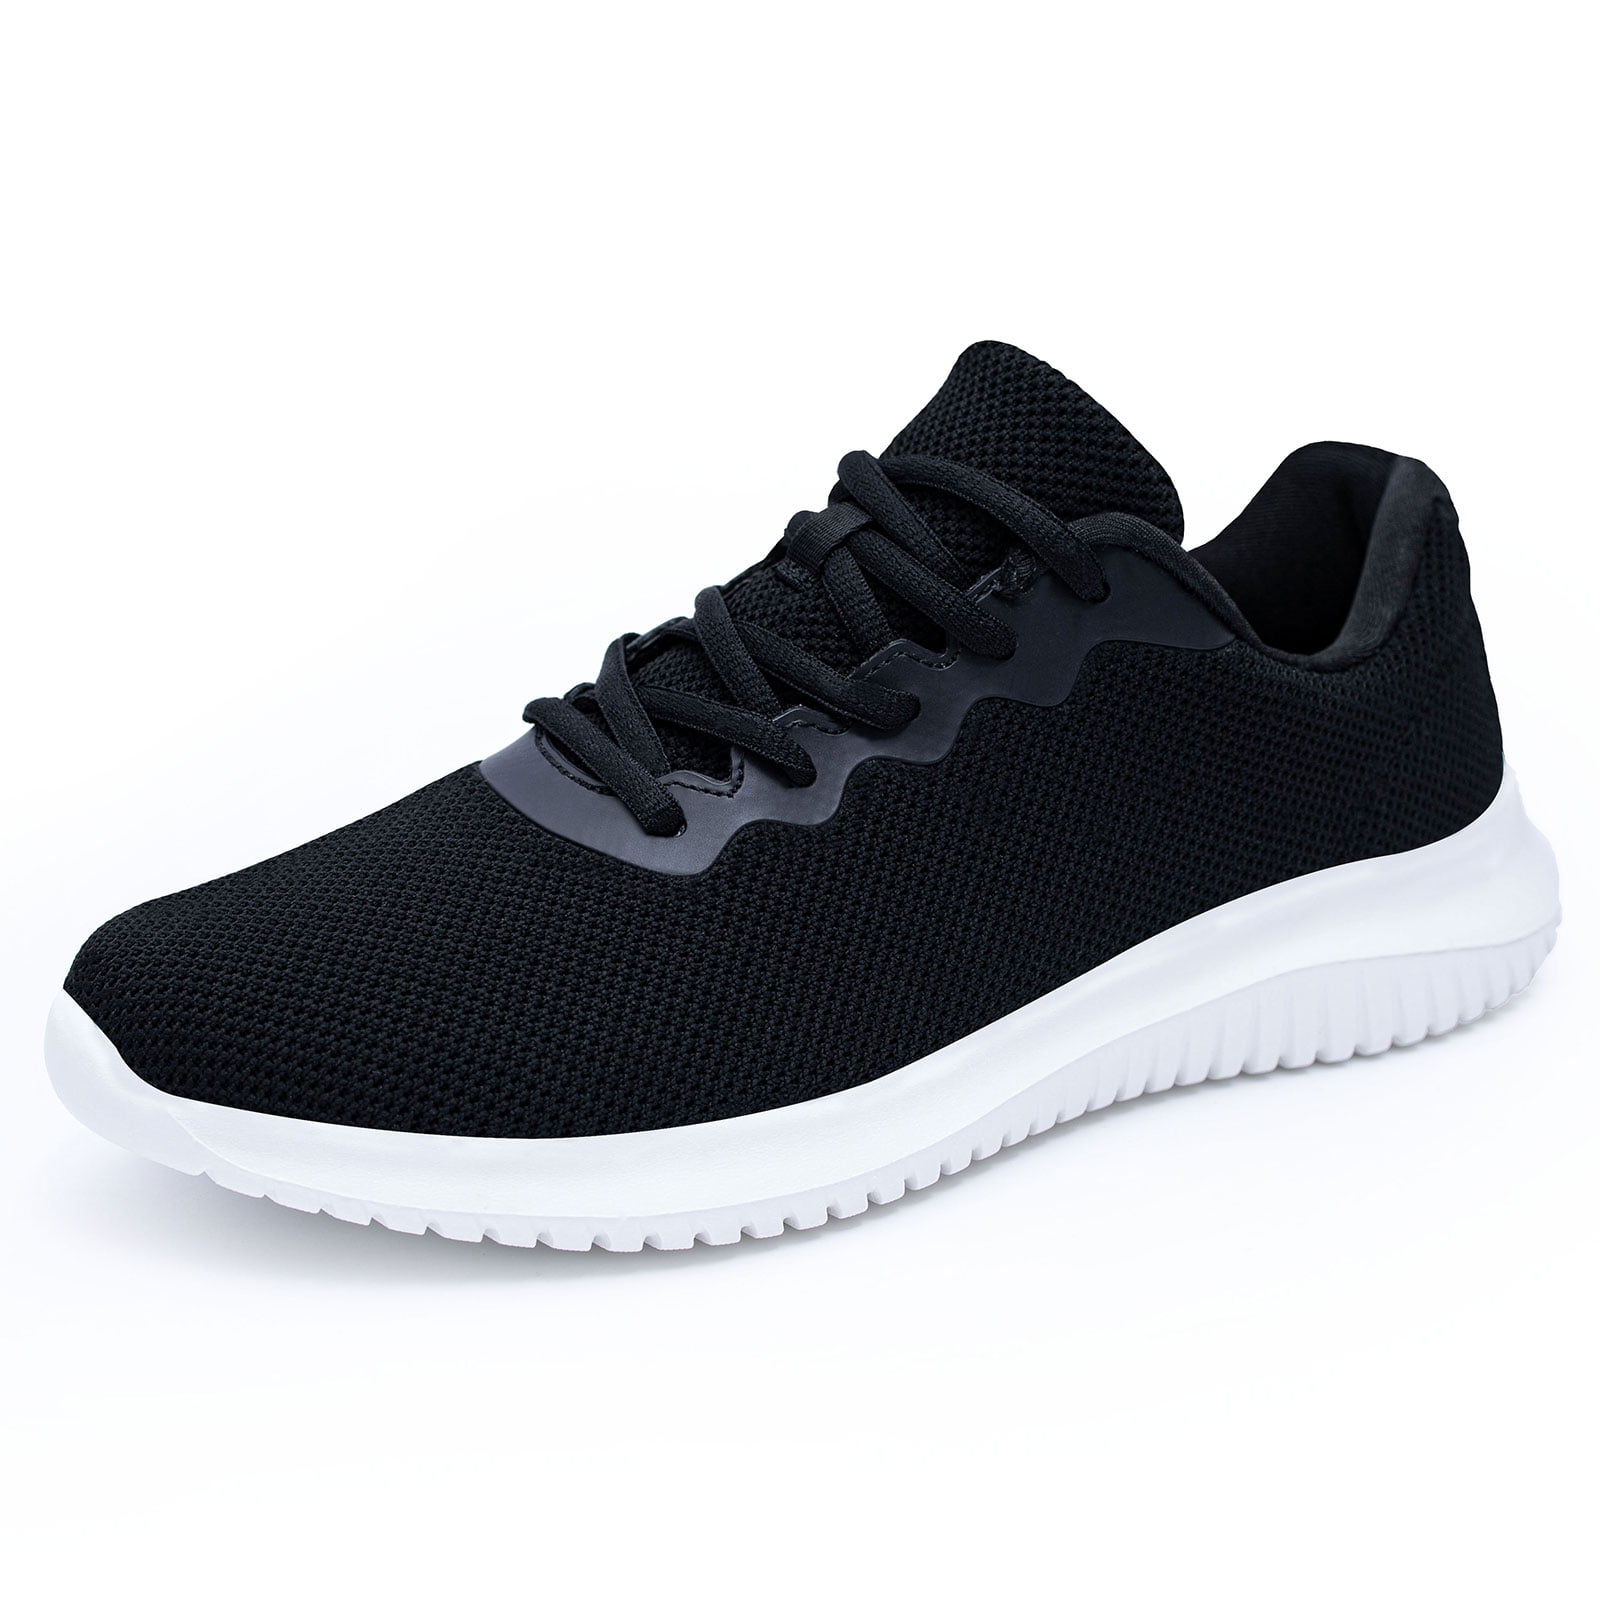 Akk Men's Mesh Walking Shoes Workout Running Sneakers Black Size 7.5 ...